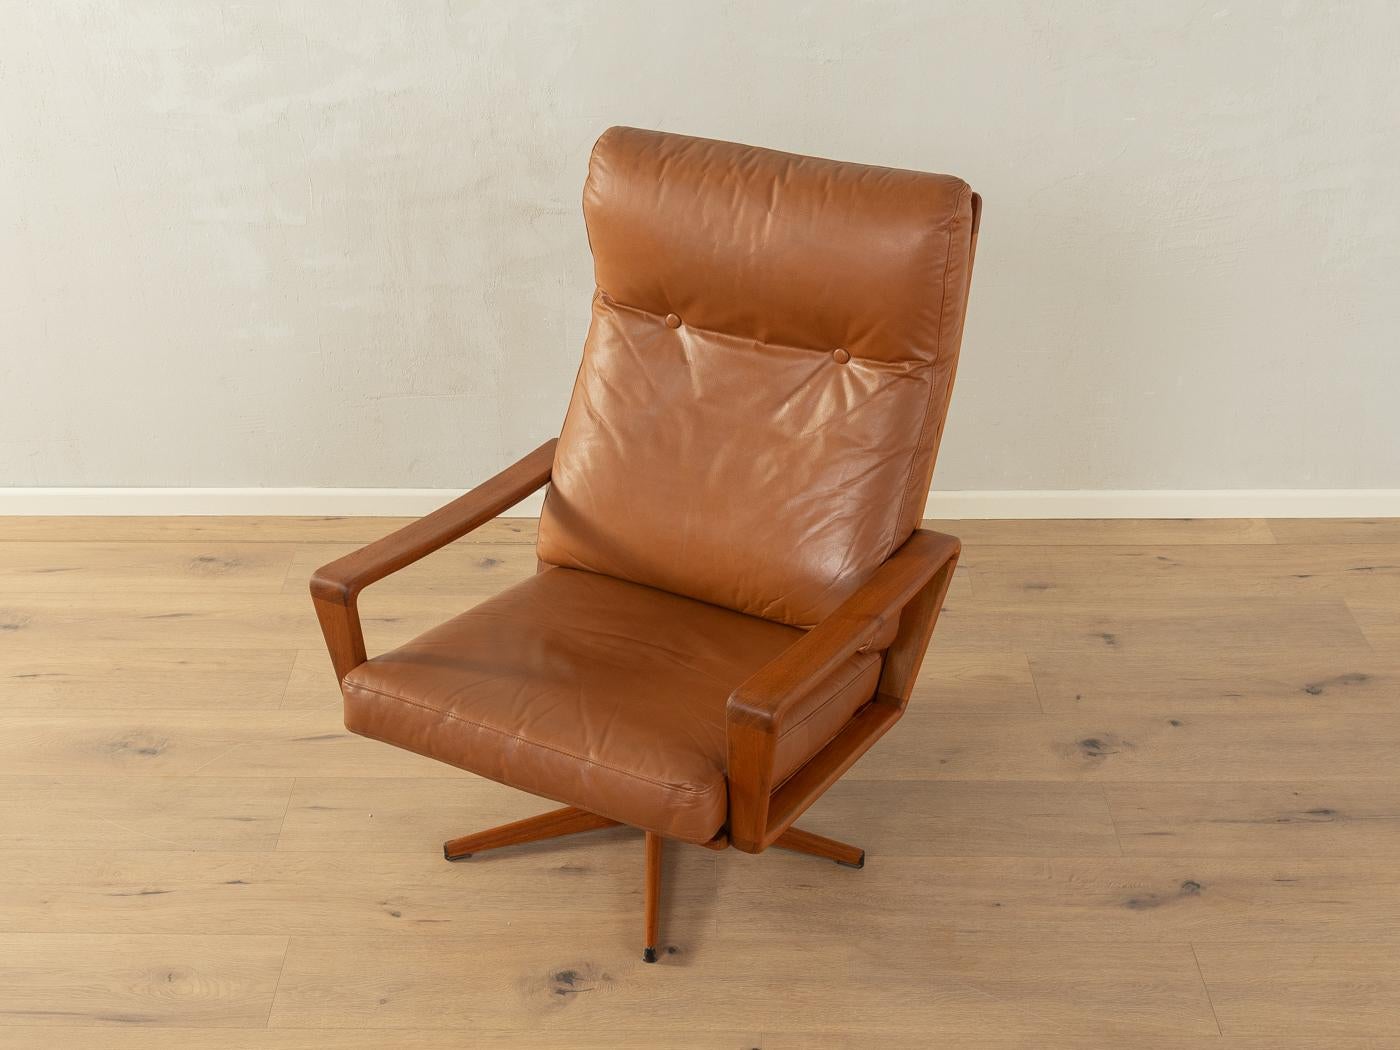 Chaise longue pivotante d'Arne Wahl Iversen pour Komfort, datant des années 1960. Cadre en teck avec nouvelle housse en cuir brun foncé de haute qualité d'origine.

Caractéristiques de qualité :
    Un design abouti : des proportions parfaites et un